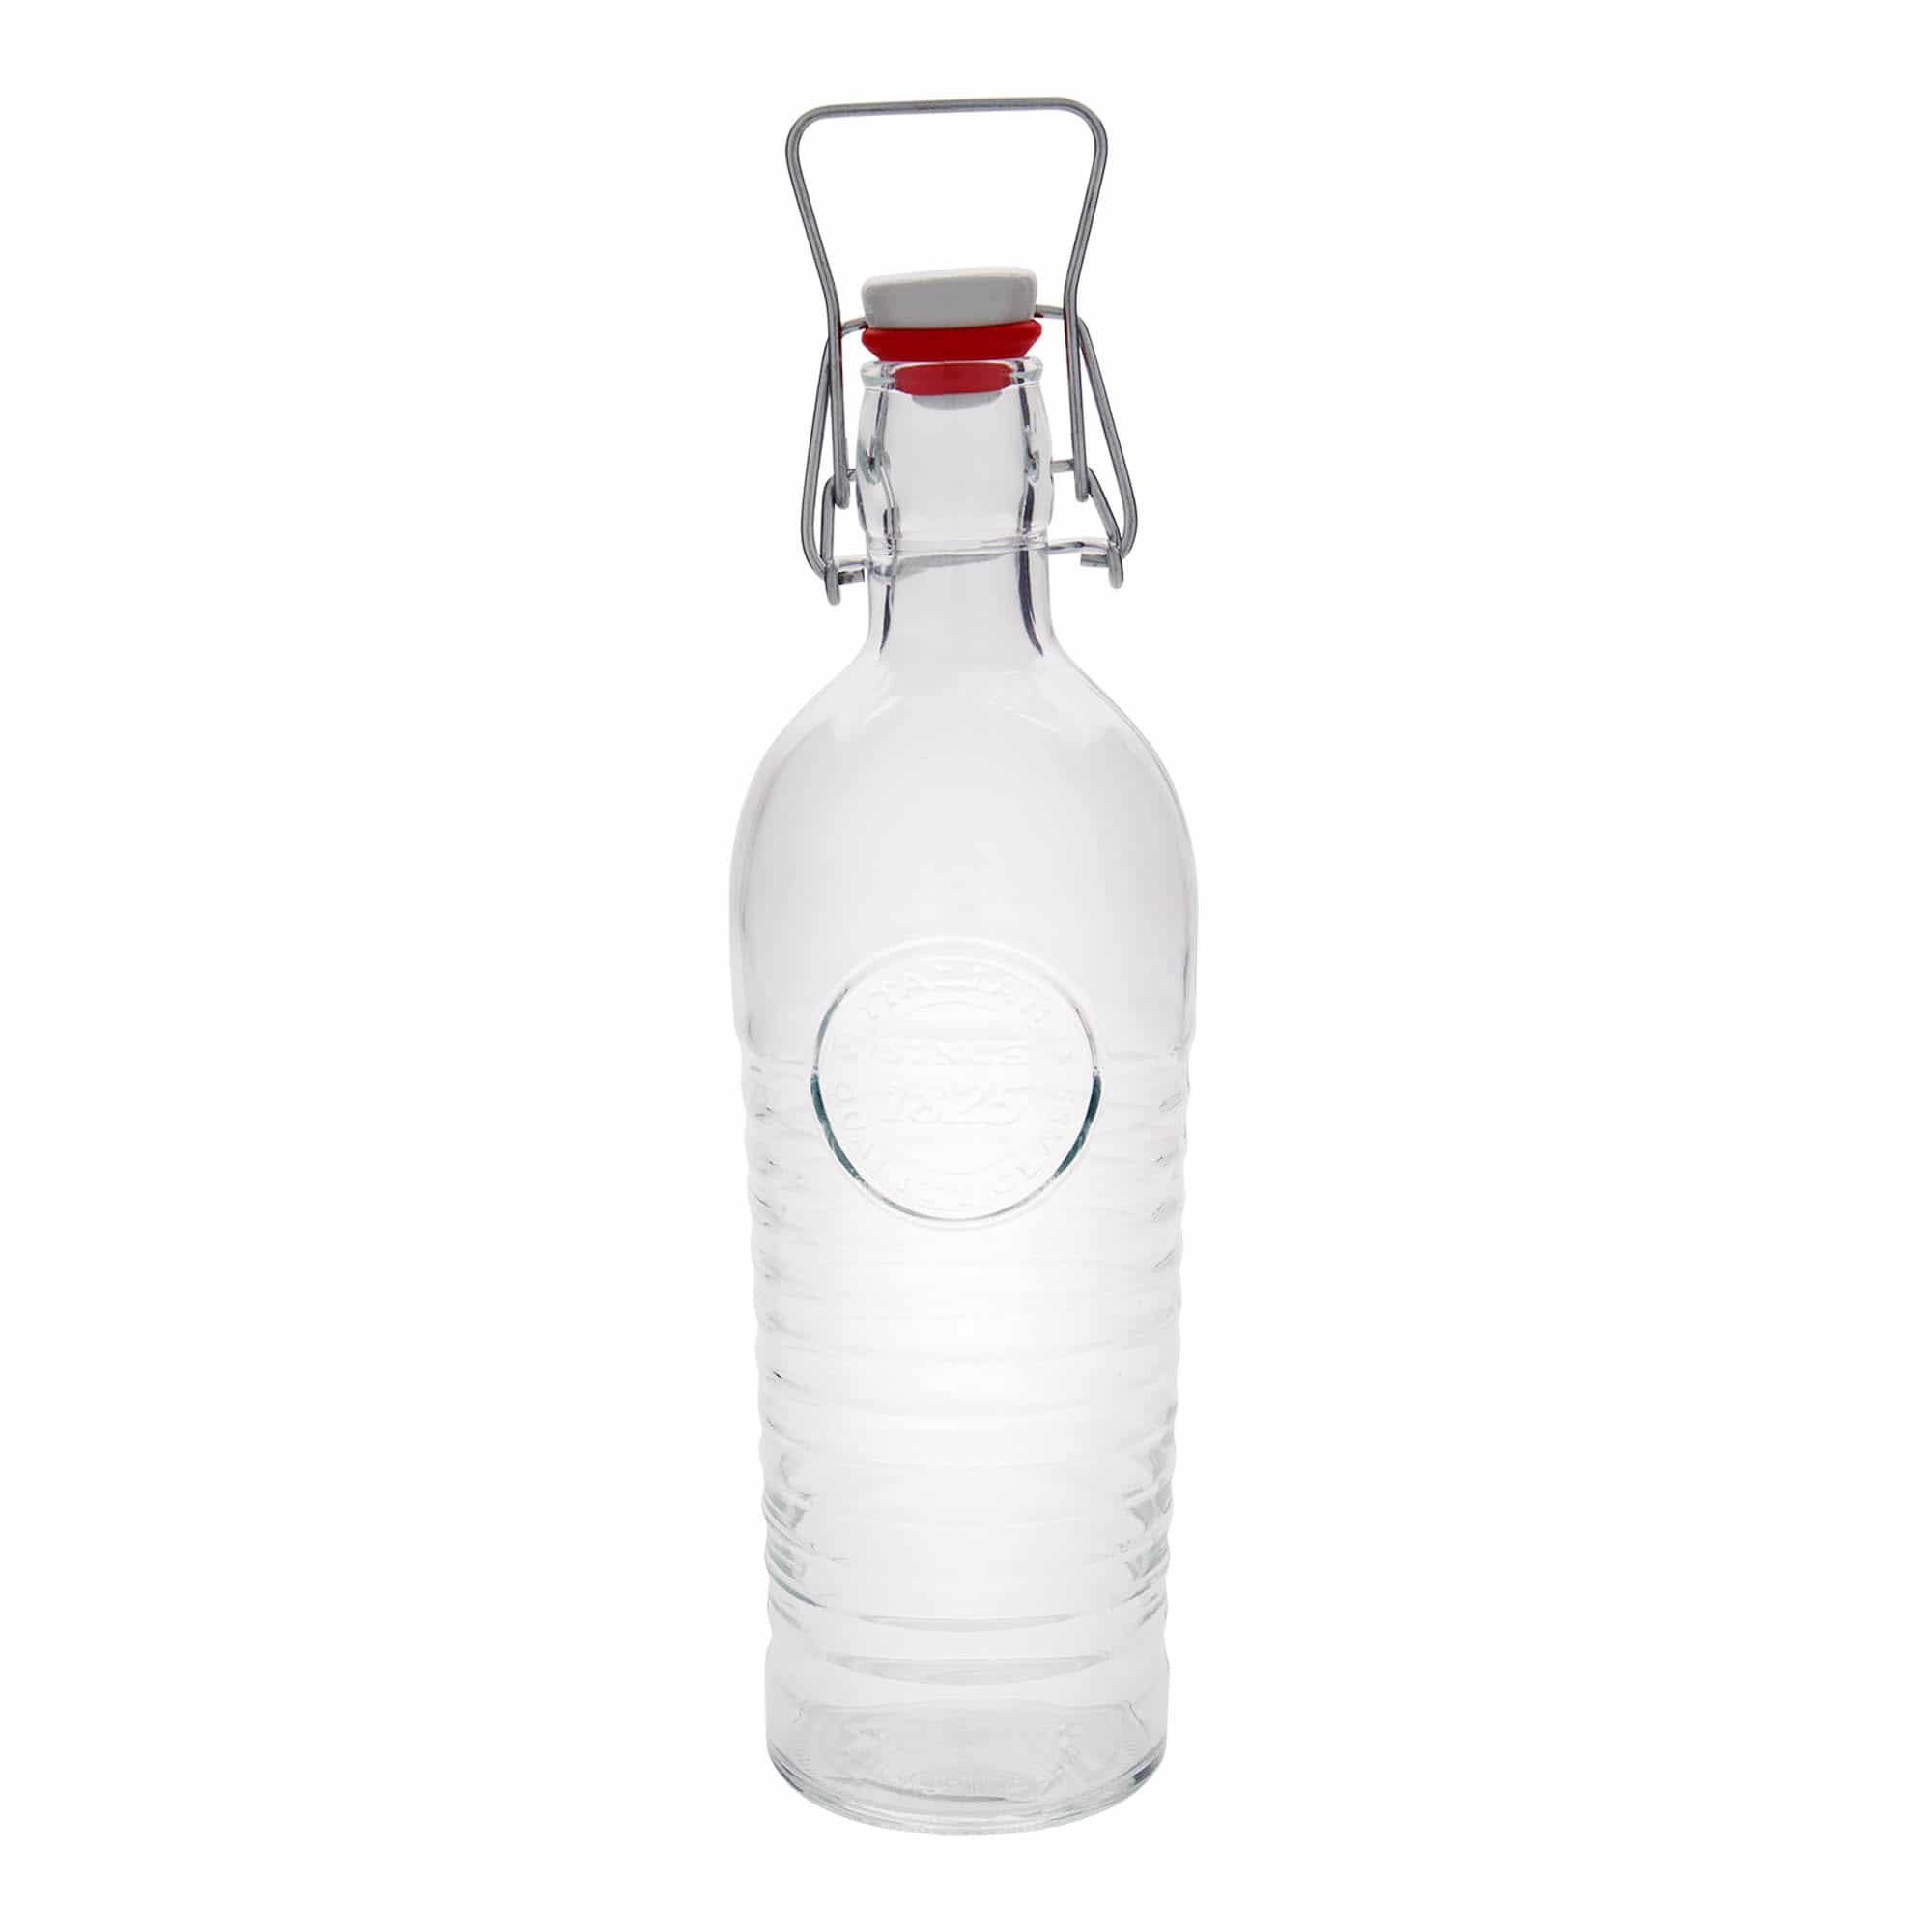 1.200 ml glasflaske 'Officina 1825', åbning: Patentlåg